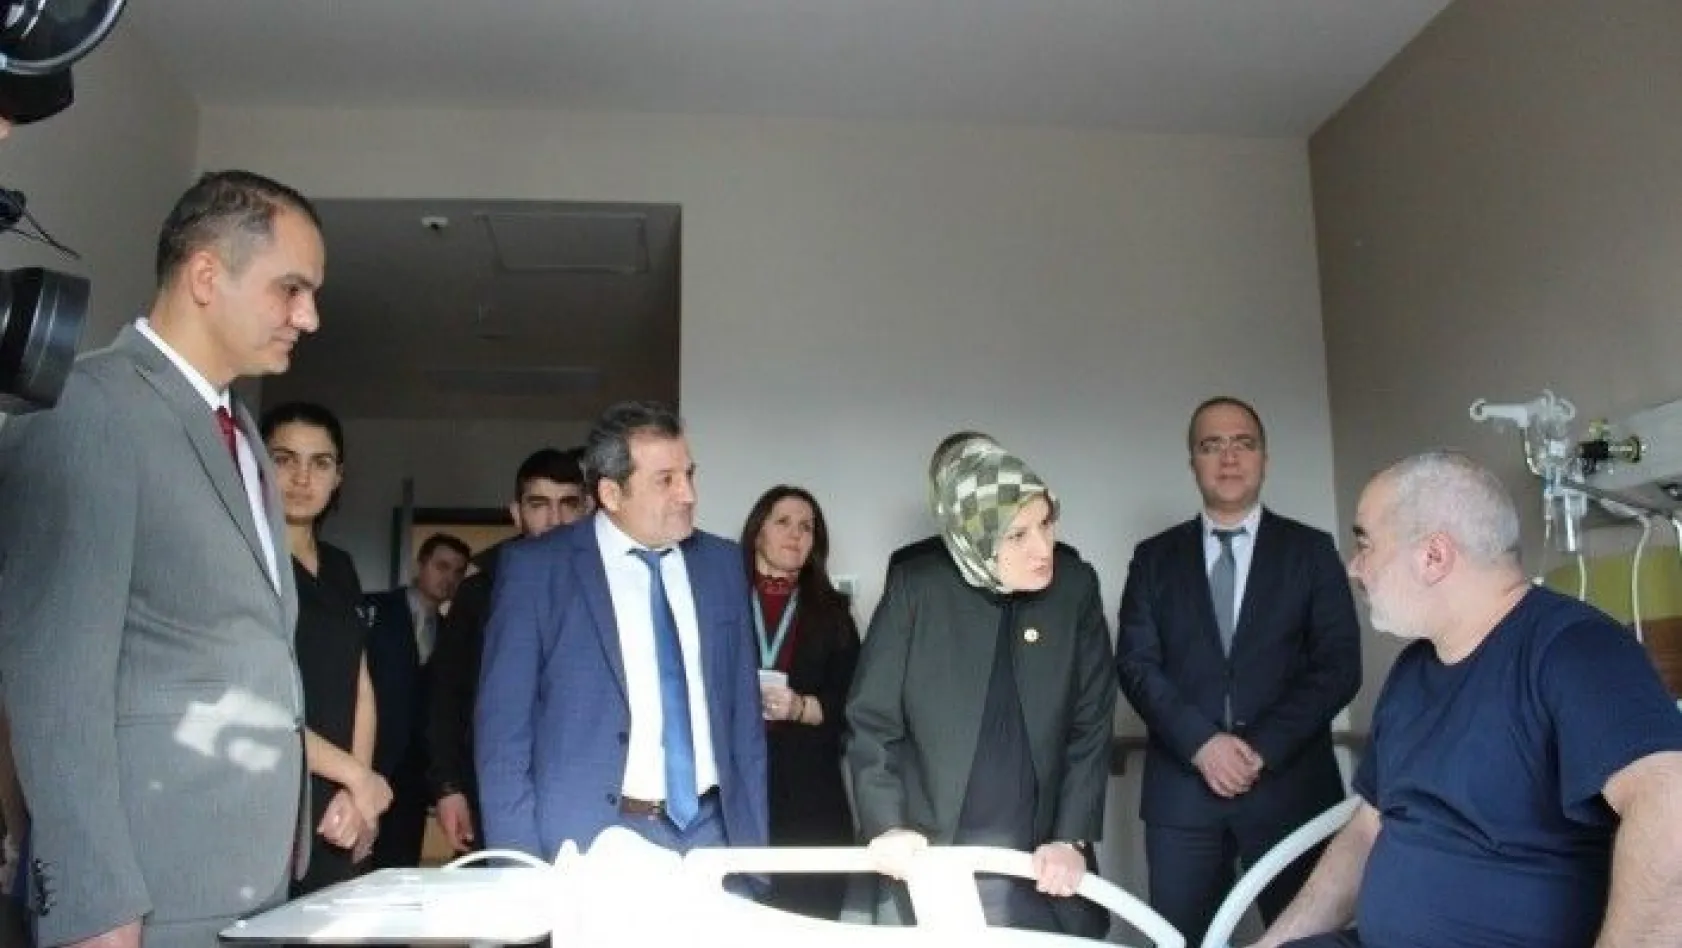 Milletvekili Sermin Balık' Elazığ'ı sağlık kampüsü haline getirdik'